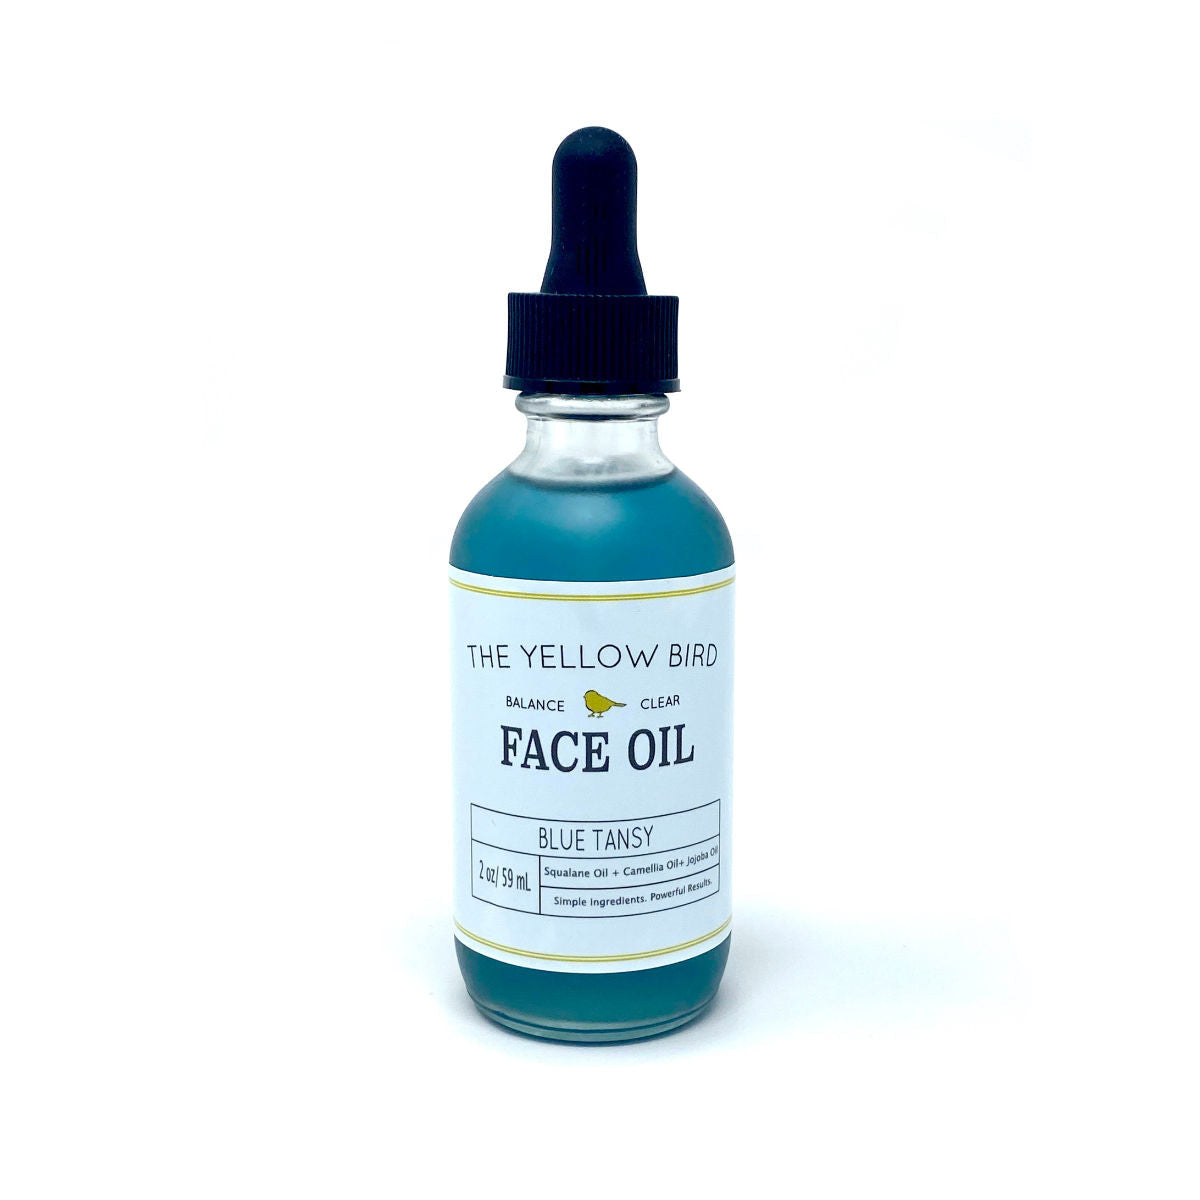 Refill Blue Tansy Face Oil